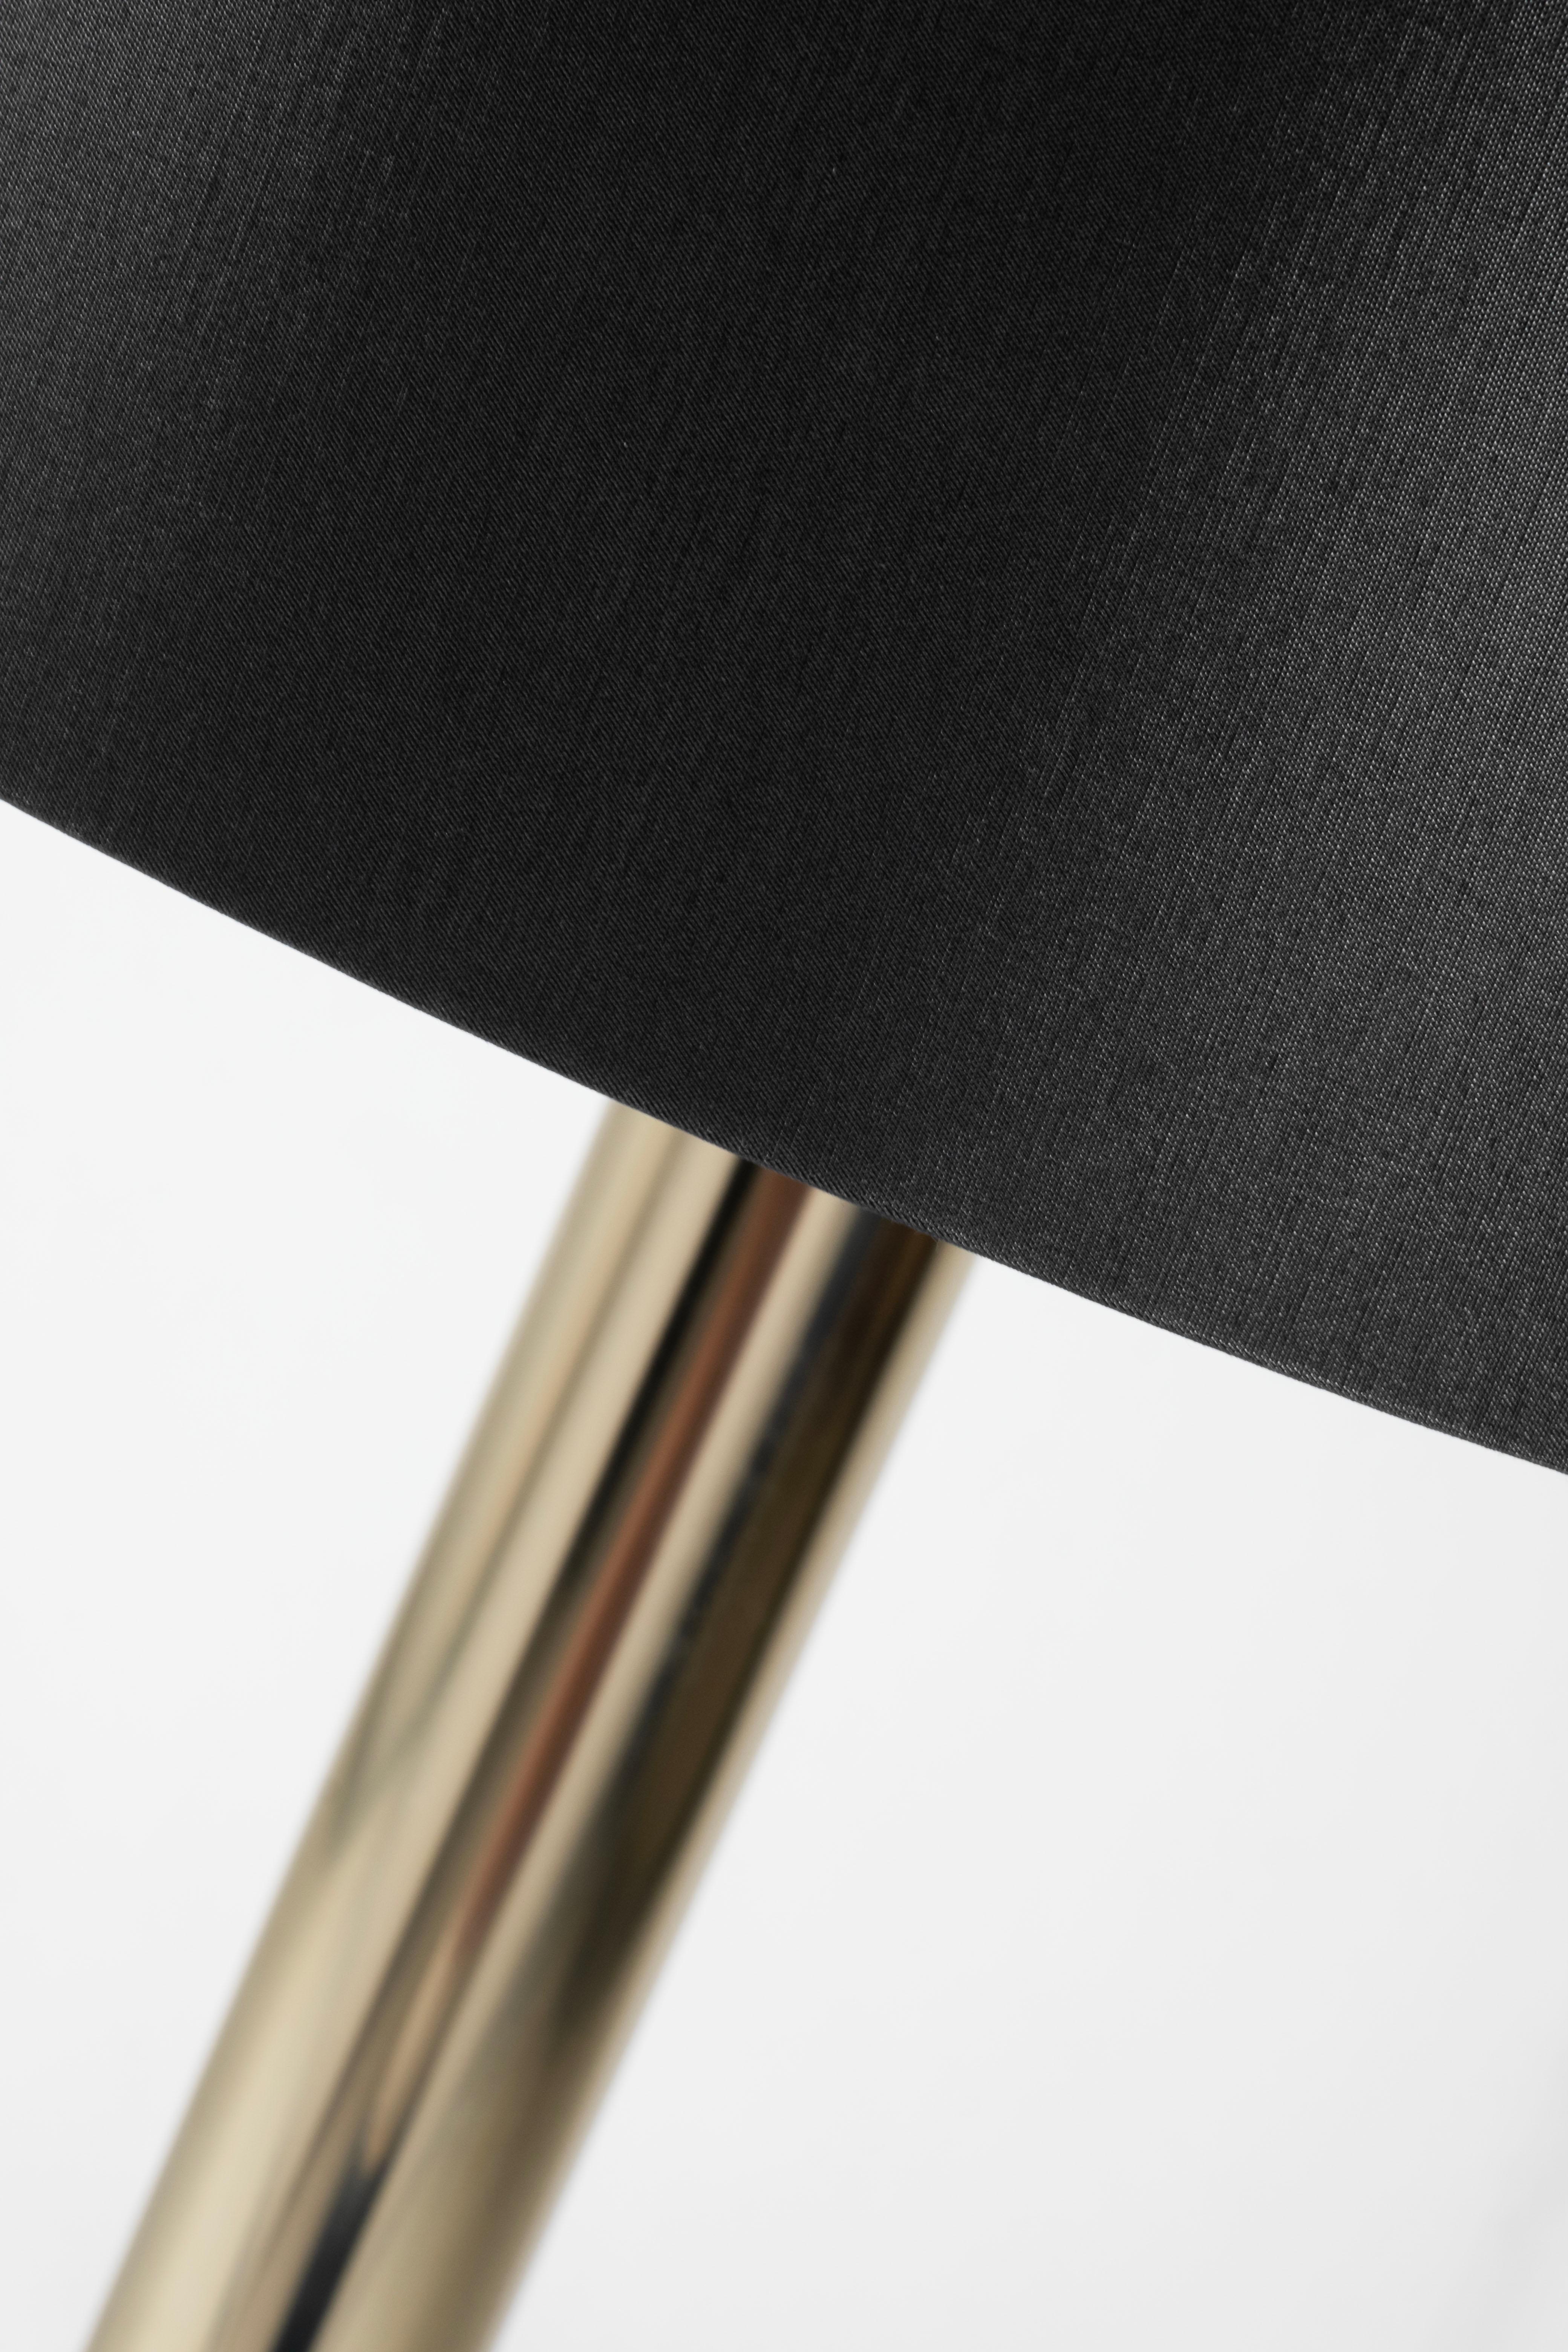 Acier inoxydable The Moderns Floor Lamp Stainless Black Shade Handmade in Portugal by Greenapple en vente